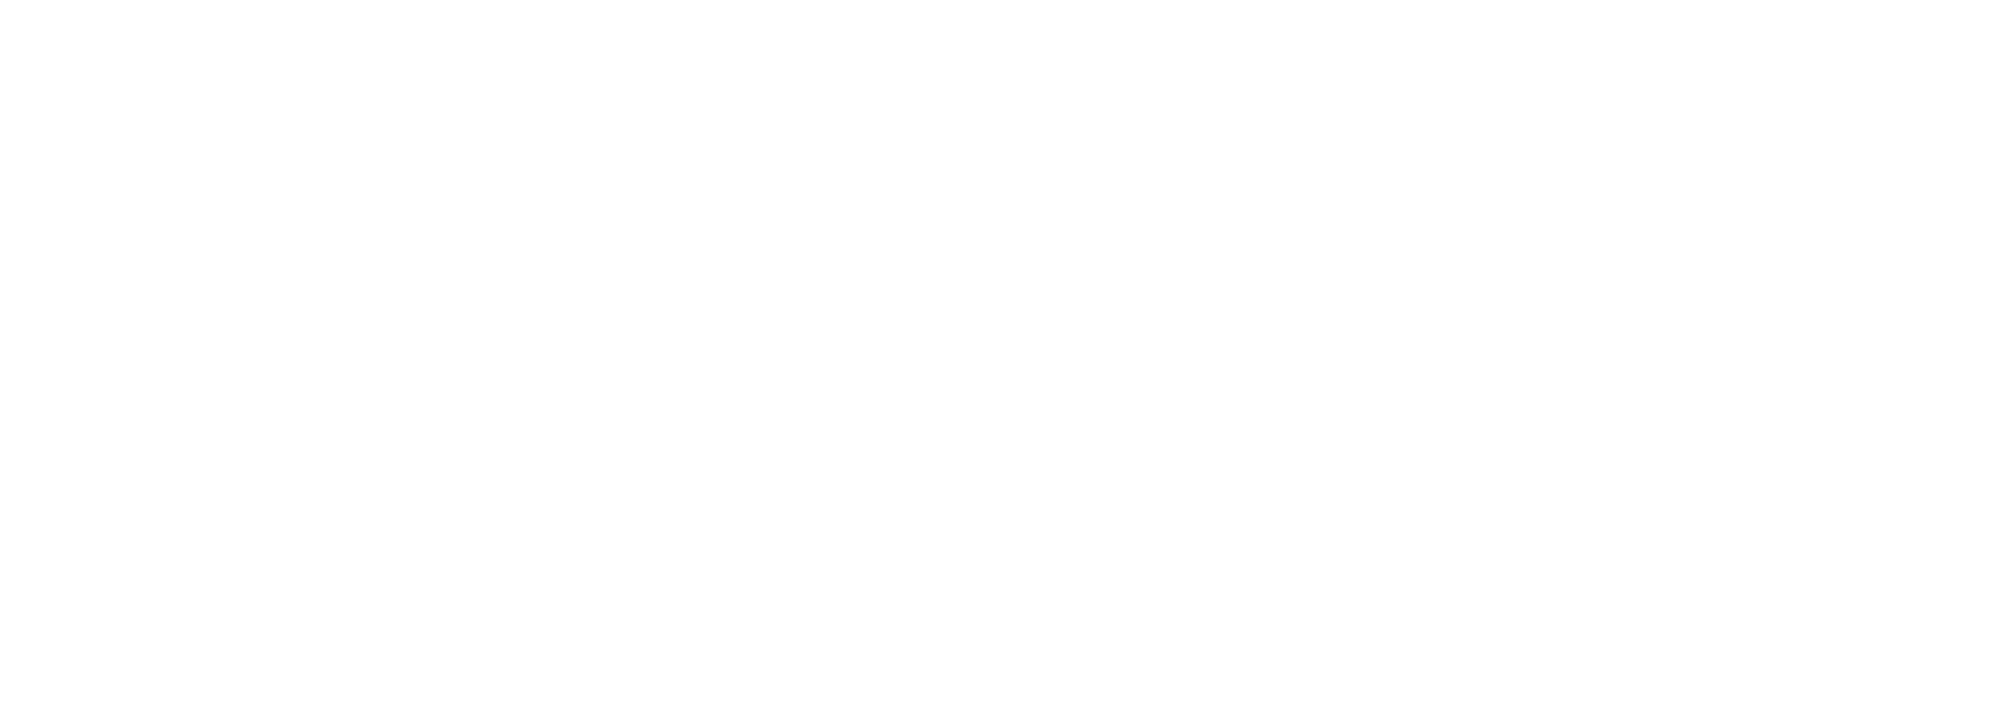 Gergana Haralampieva, Violin